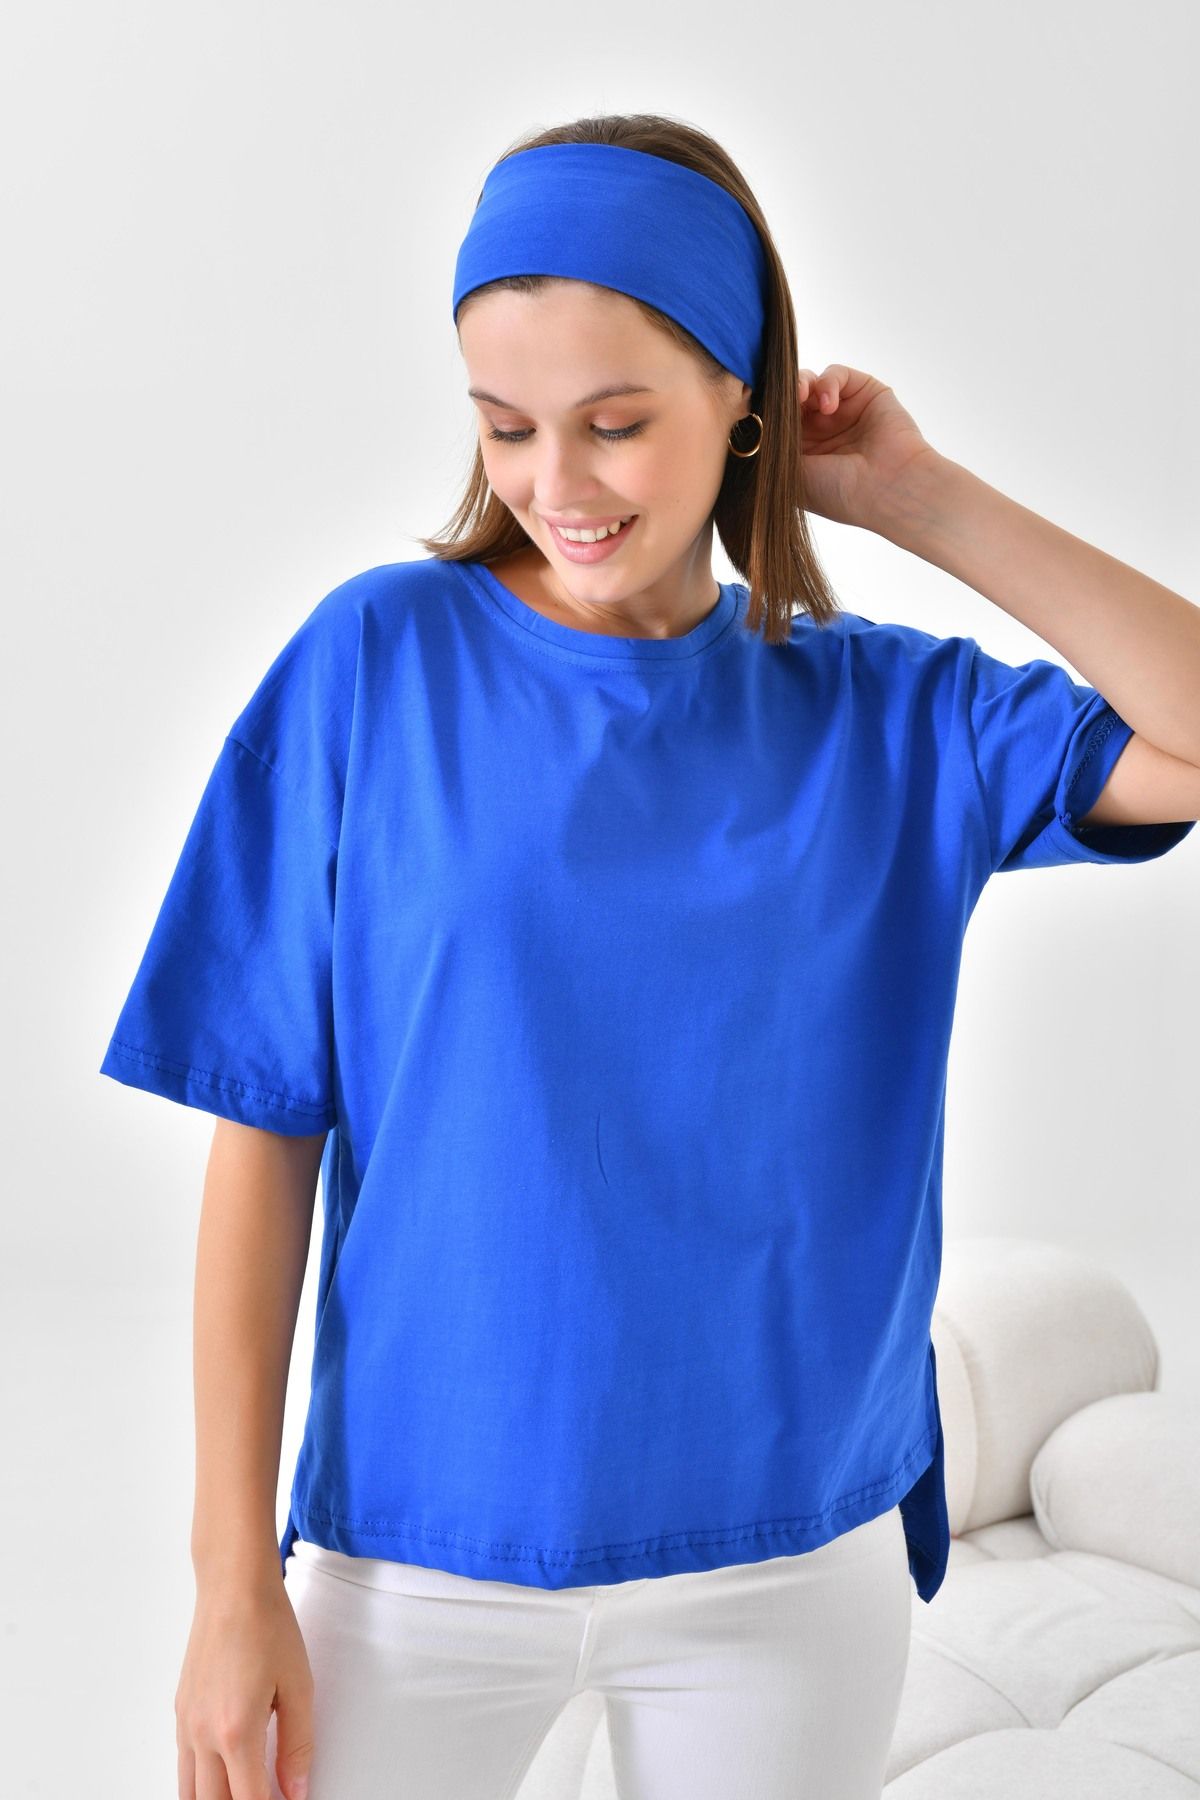 mirach %100 Pamuk Tişört Kısa Kollu Düz Model Kadın T-shirt Pamuklu Tişört Saks Mavi (BANDANA HEDİYELİ)